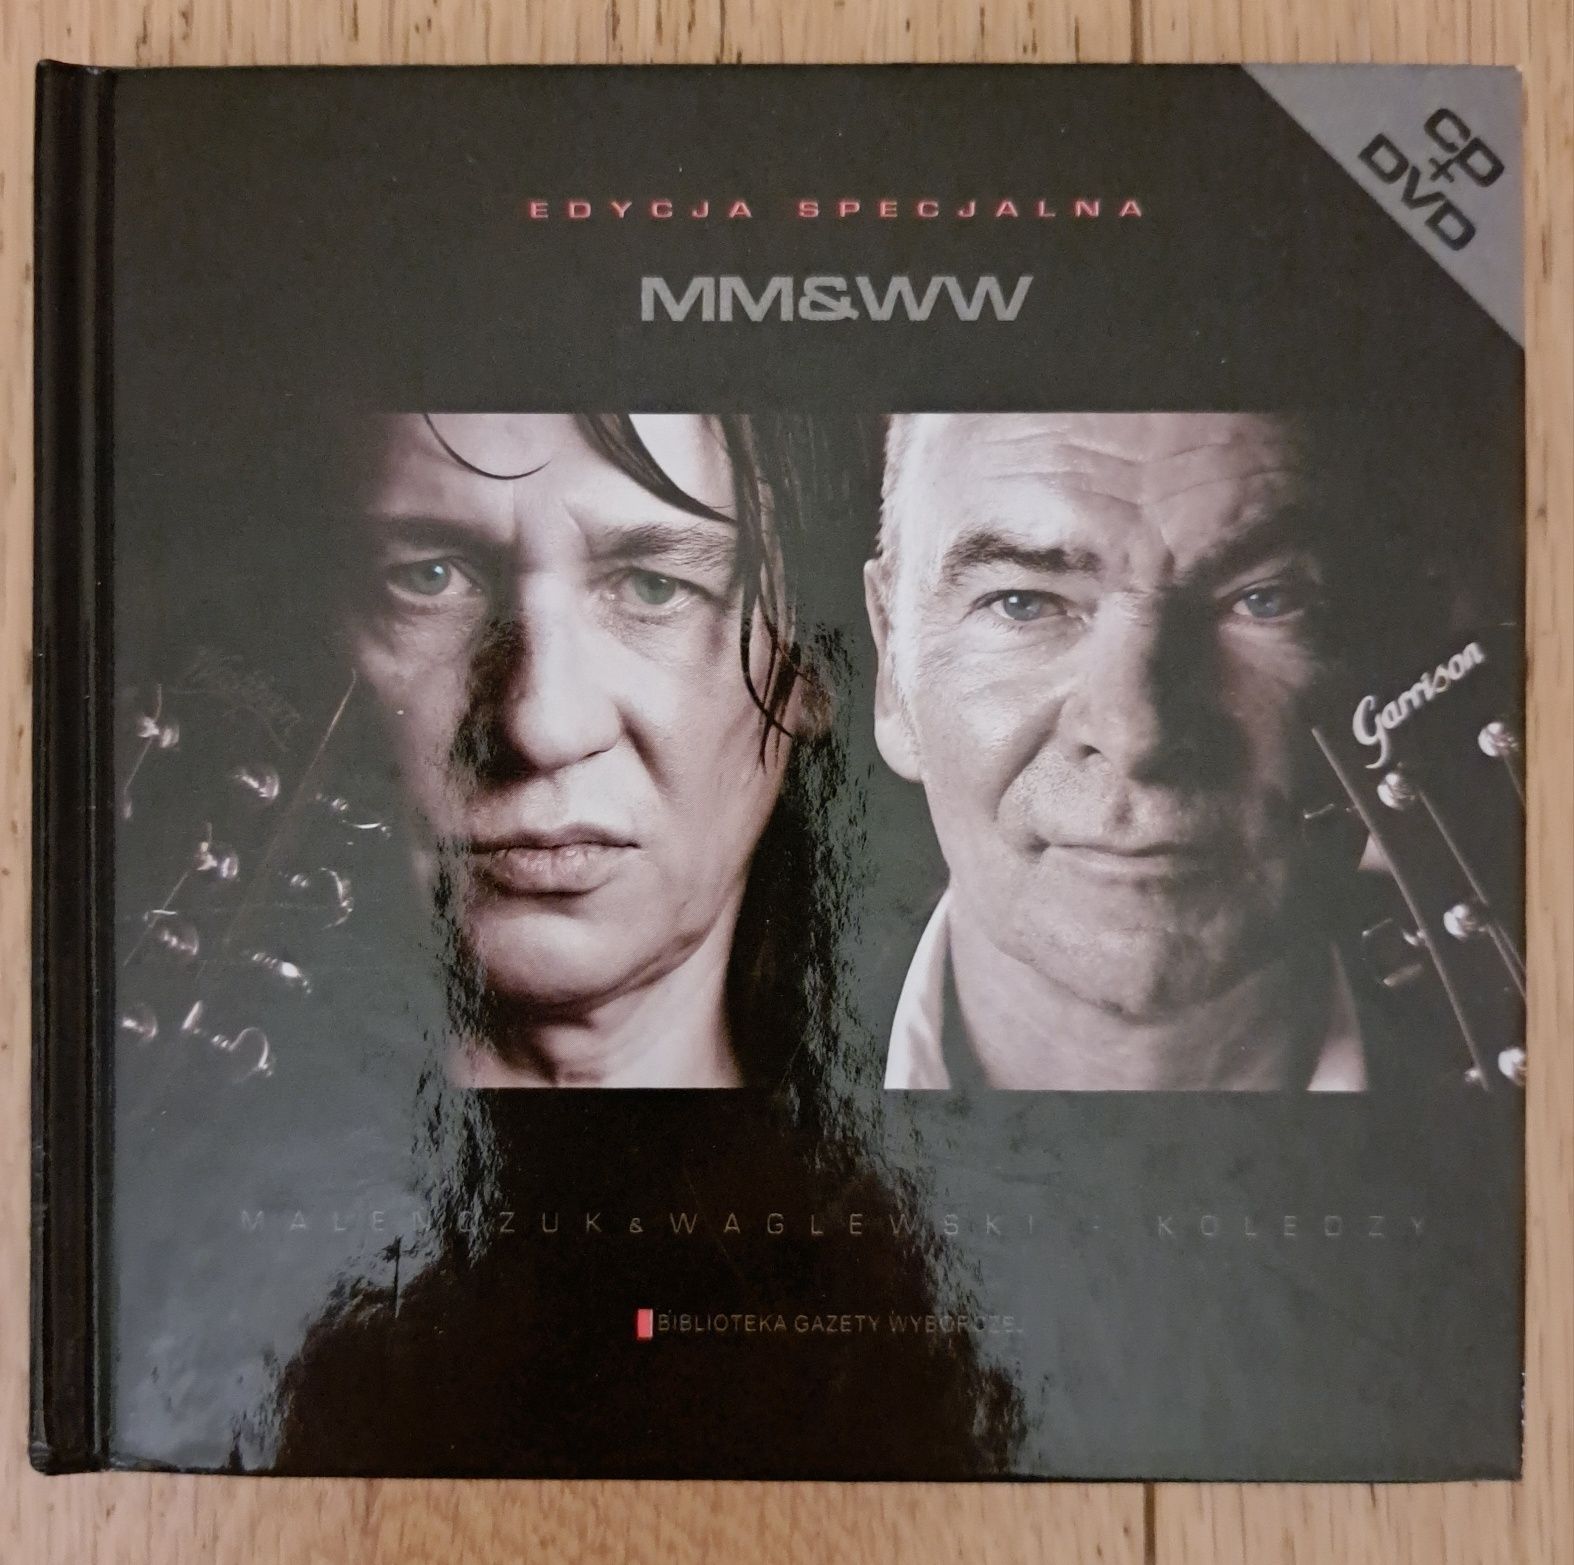 Maleńczuk Waglewski Koledzy cd+dvd